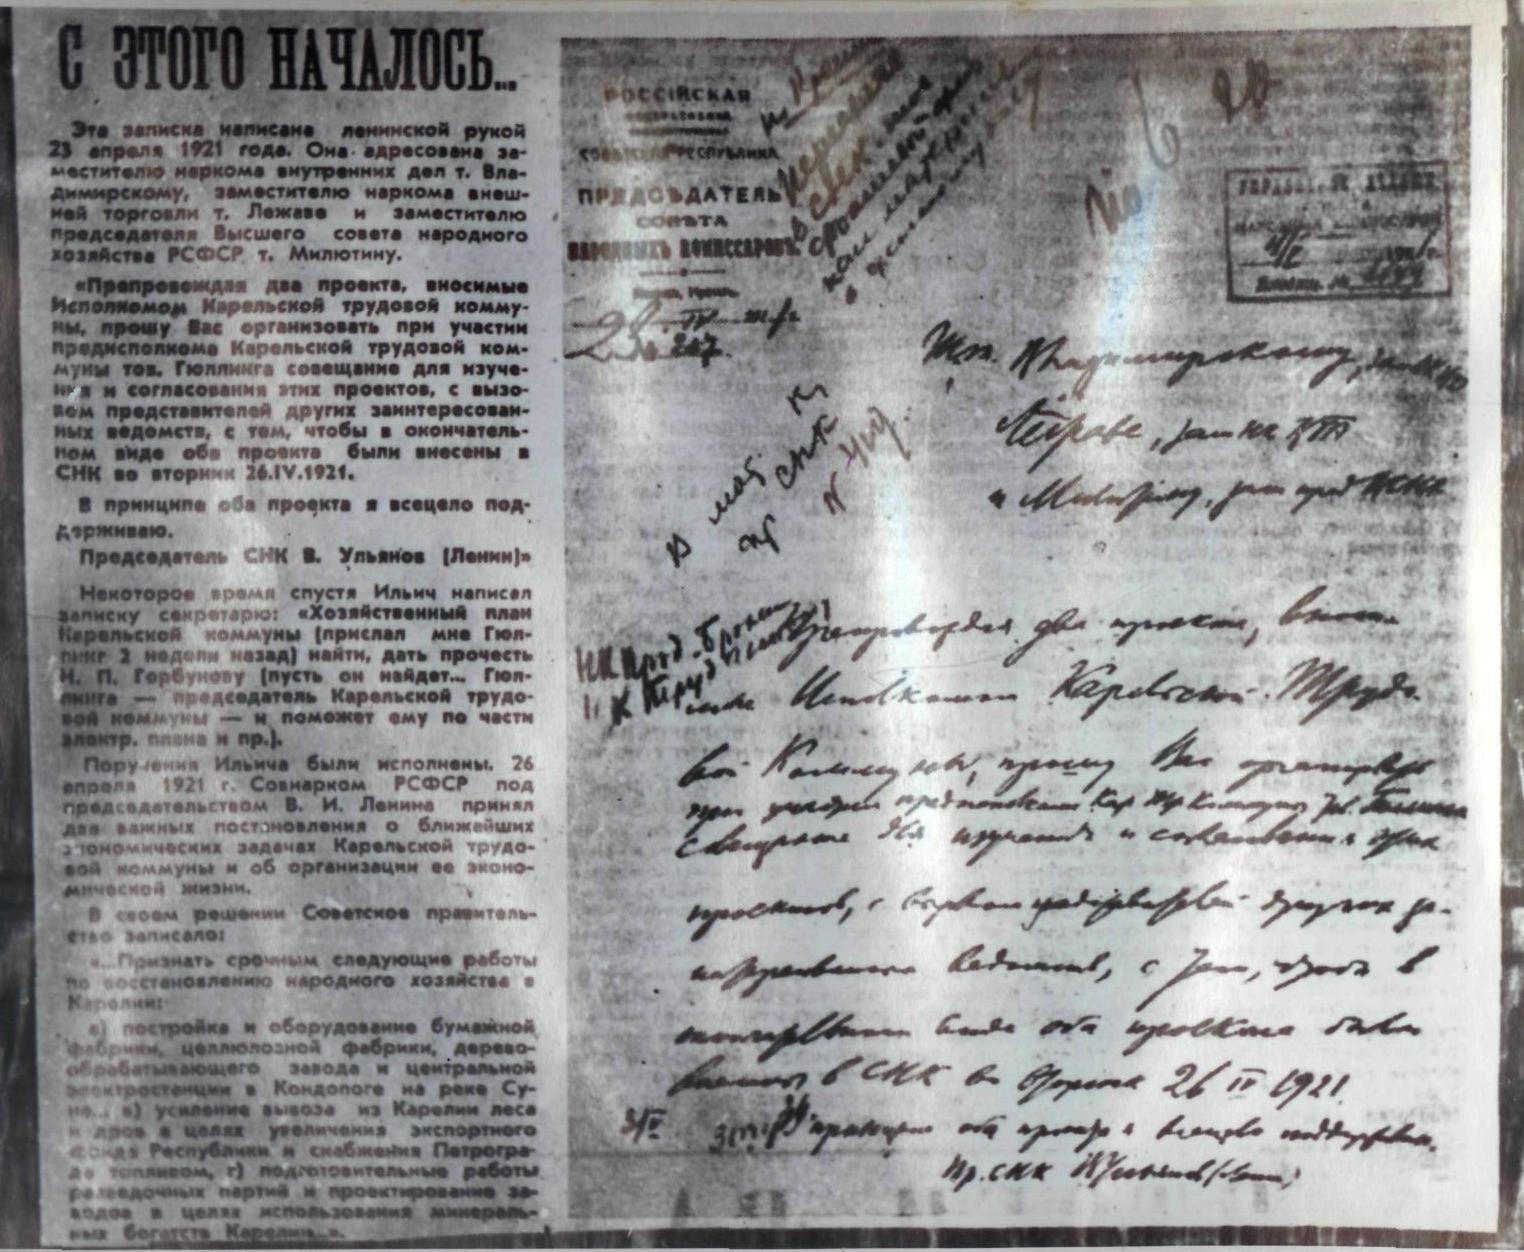 Copy of V. Lenin's resolution: "Generally, I fully support both projects. V. Ulyanov (Lenin)"